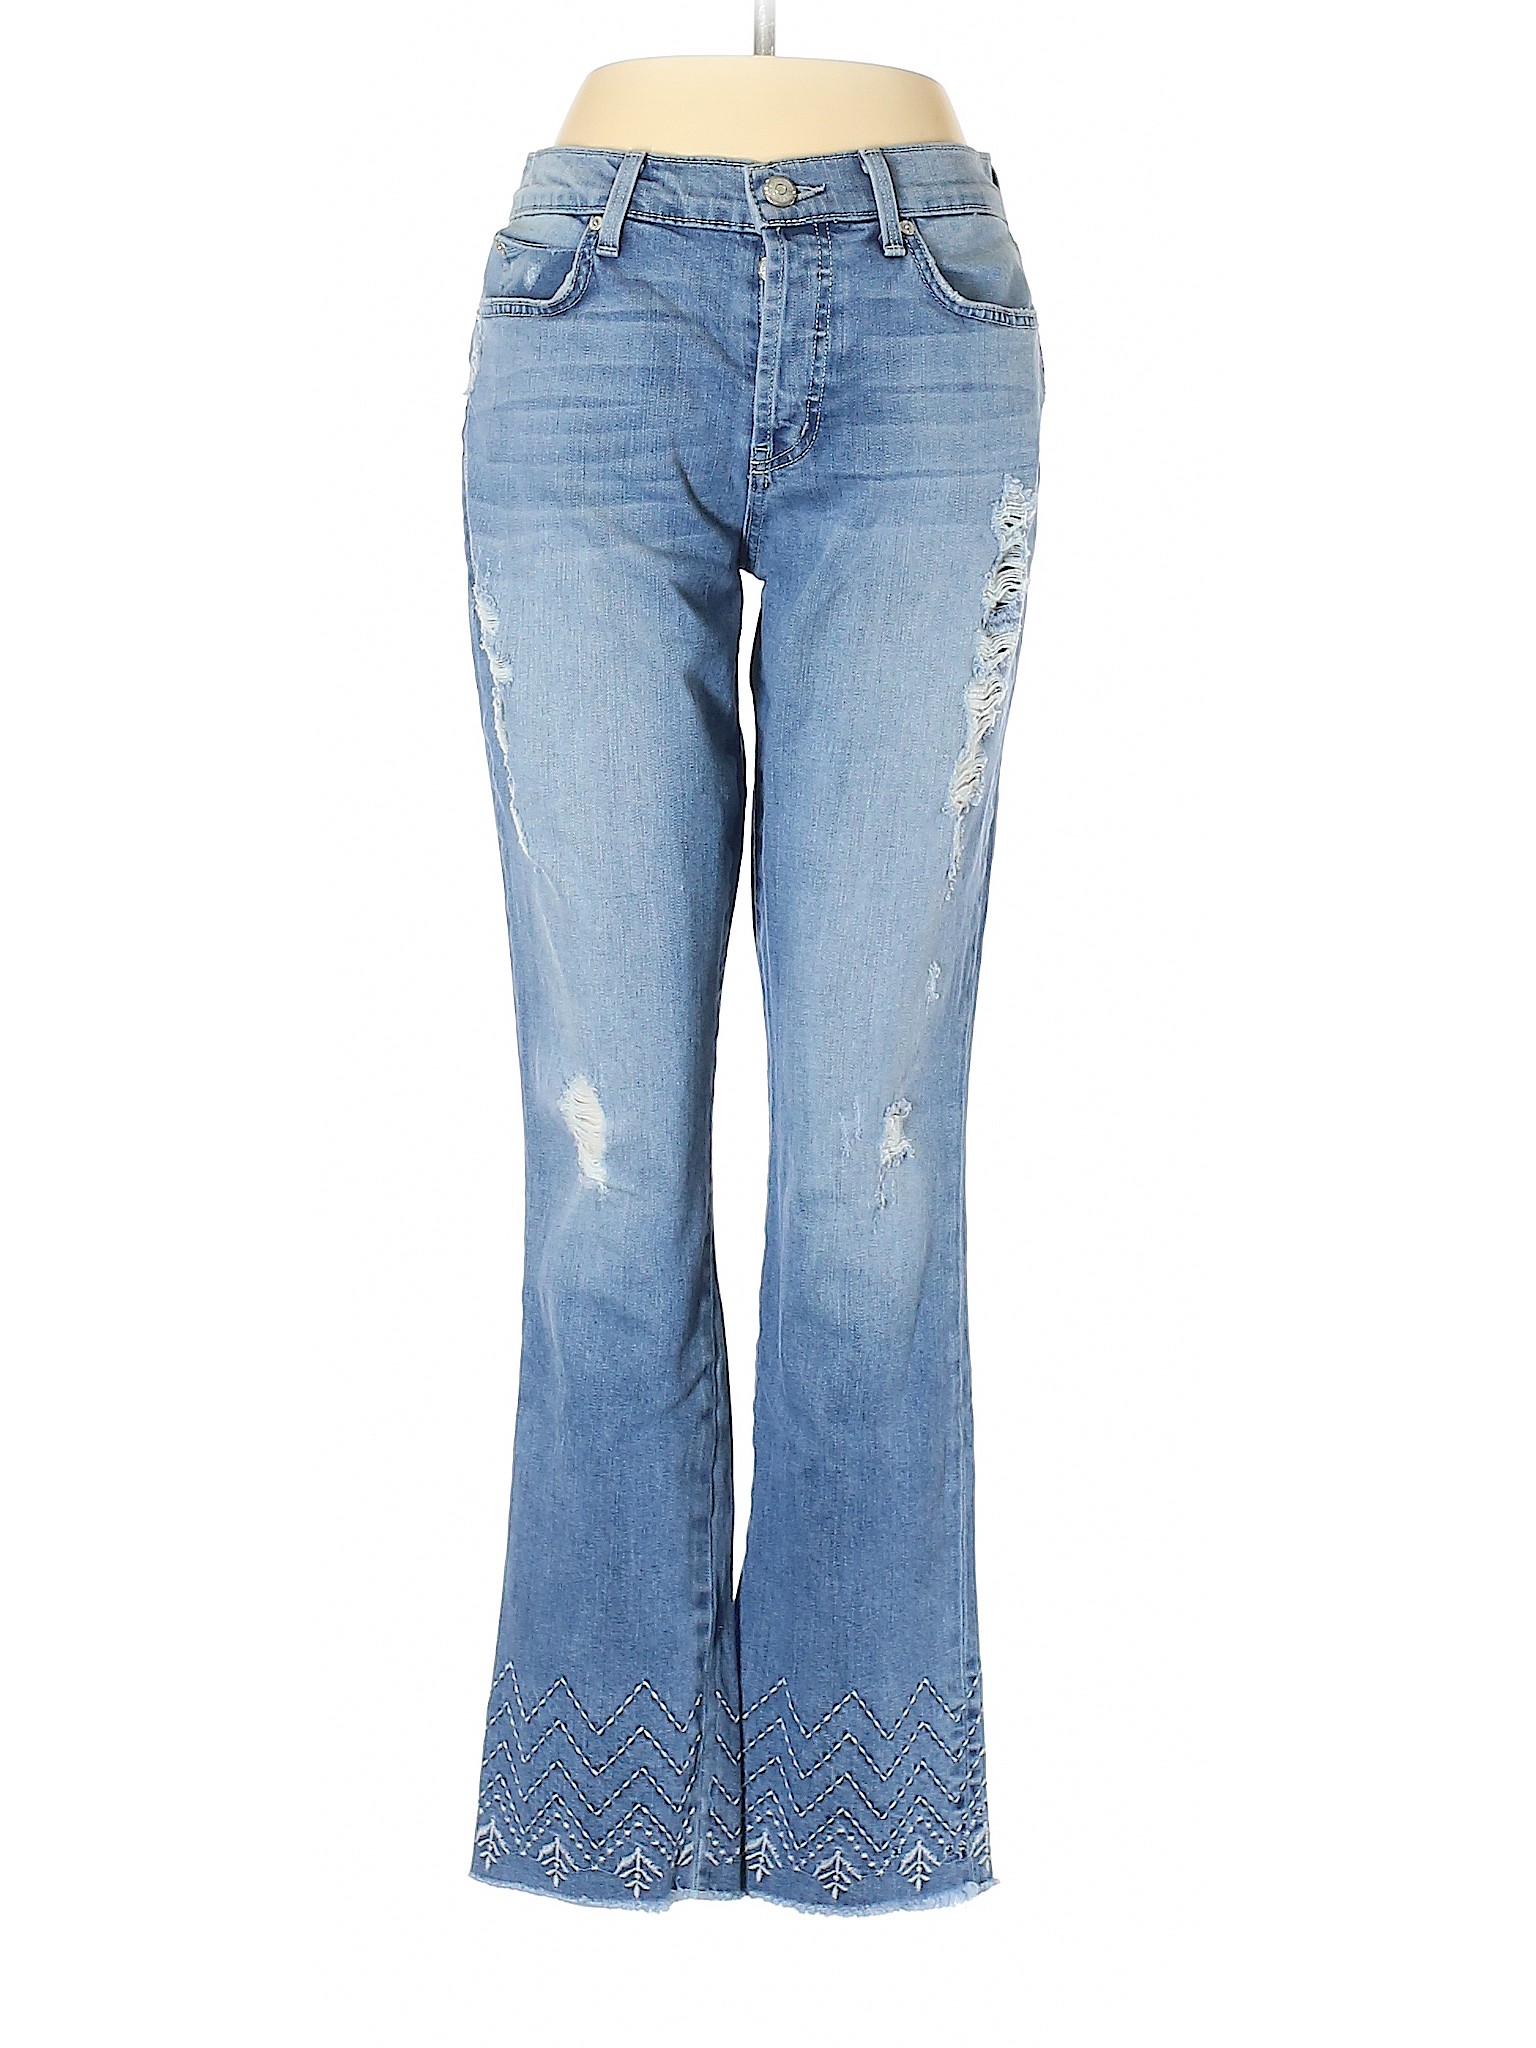 Level 99 Women Blue Jeans 28W | eBay